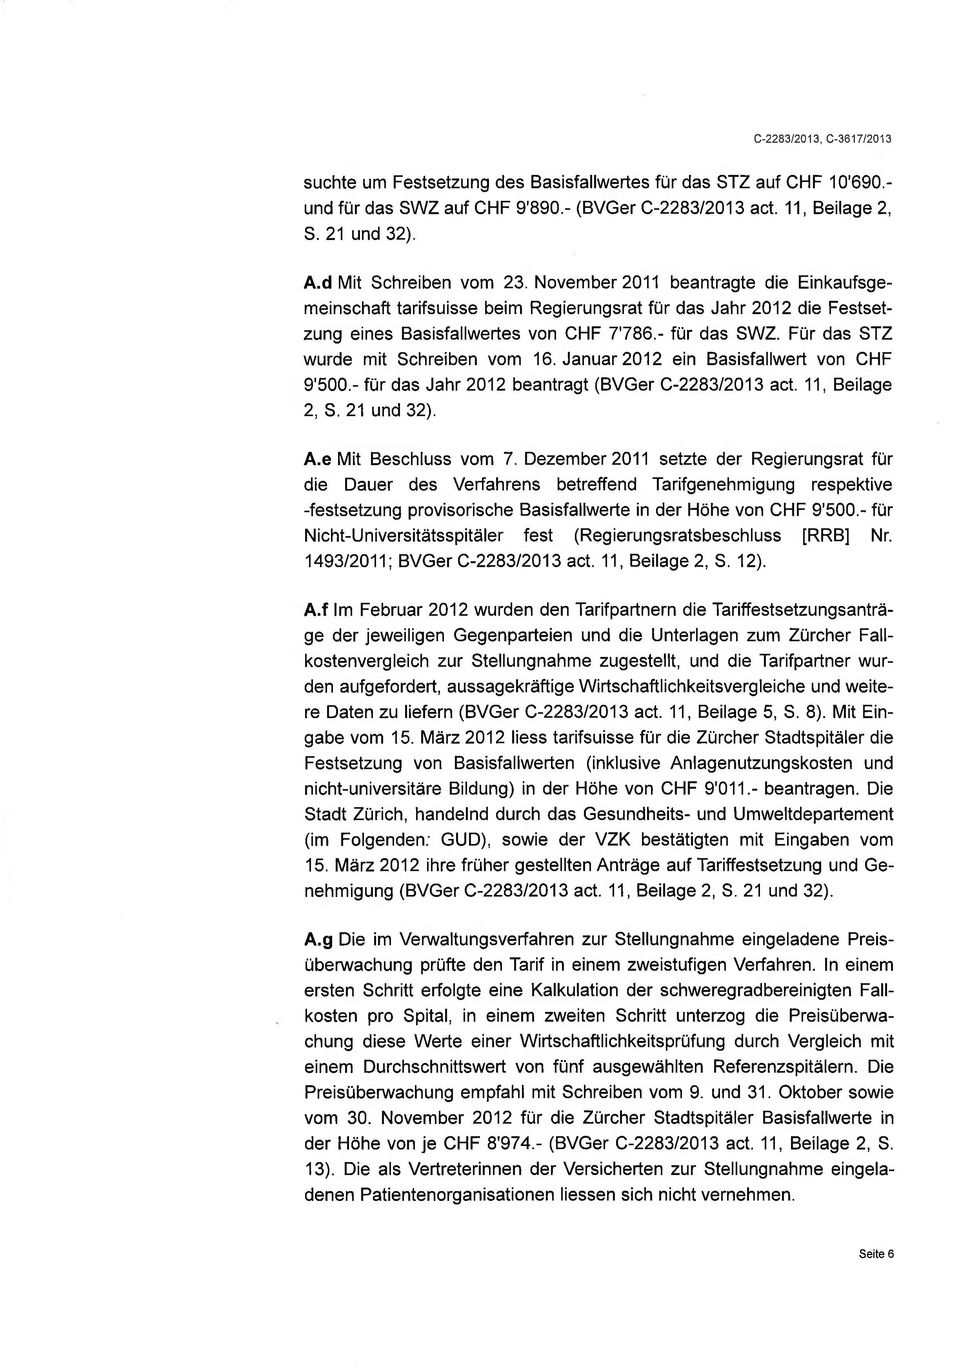 Für das STZ wurde mit Schreiben vom 16. Januar2012 ein Basisfallwert von CHF 9'500.- für das Jahr 2012 beantragt (BVGer C-228312013 act. 11, Beilage 2, S.21 und 32). A.e Mit Beschluss vom 7.